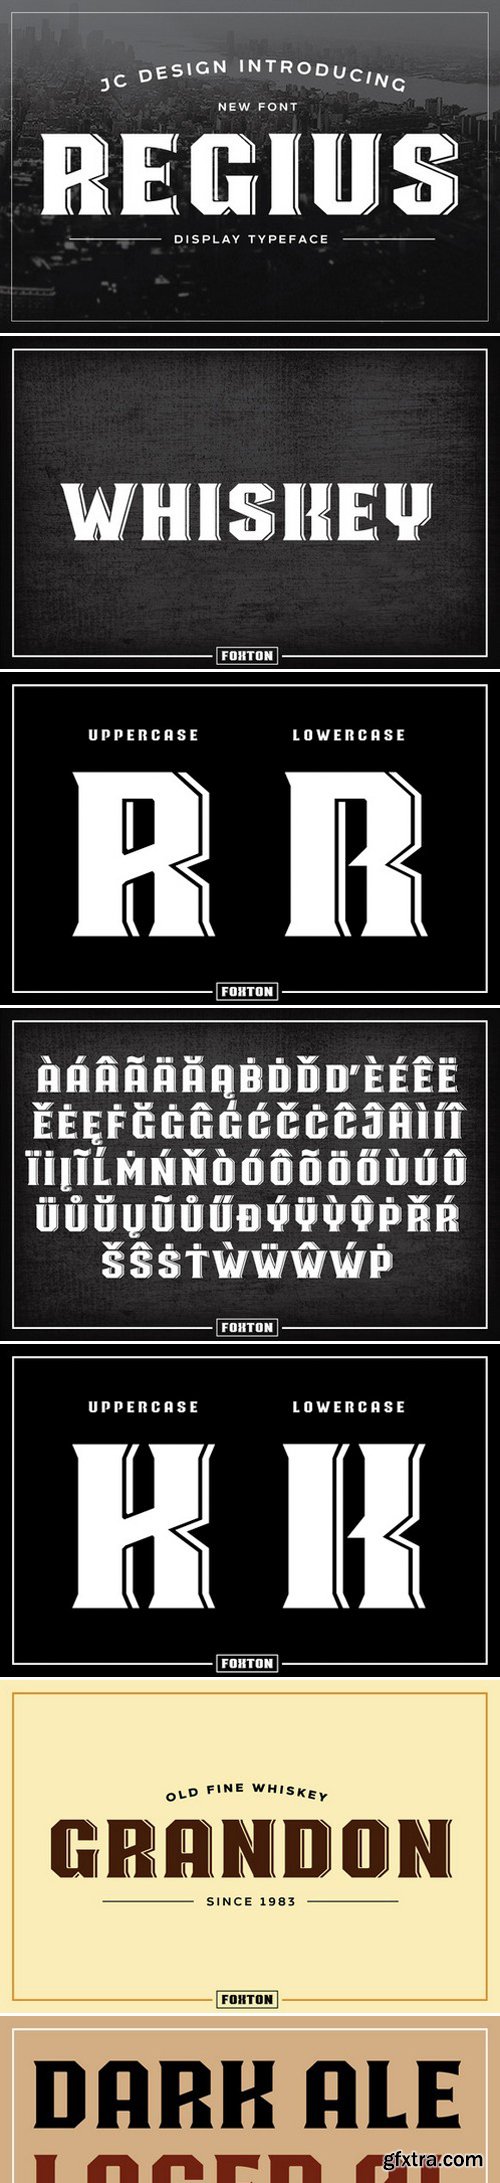 CM - Regius Typeface 402669